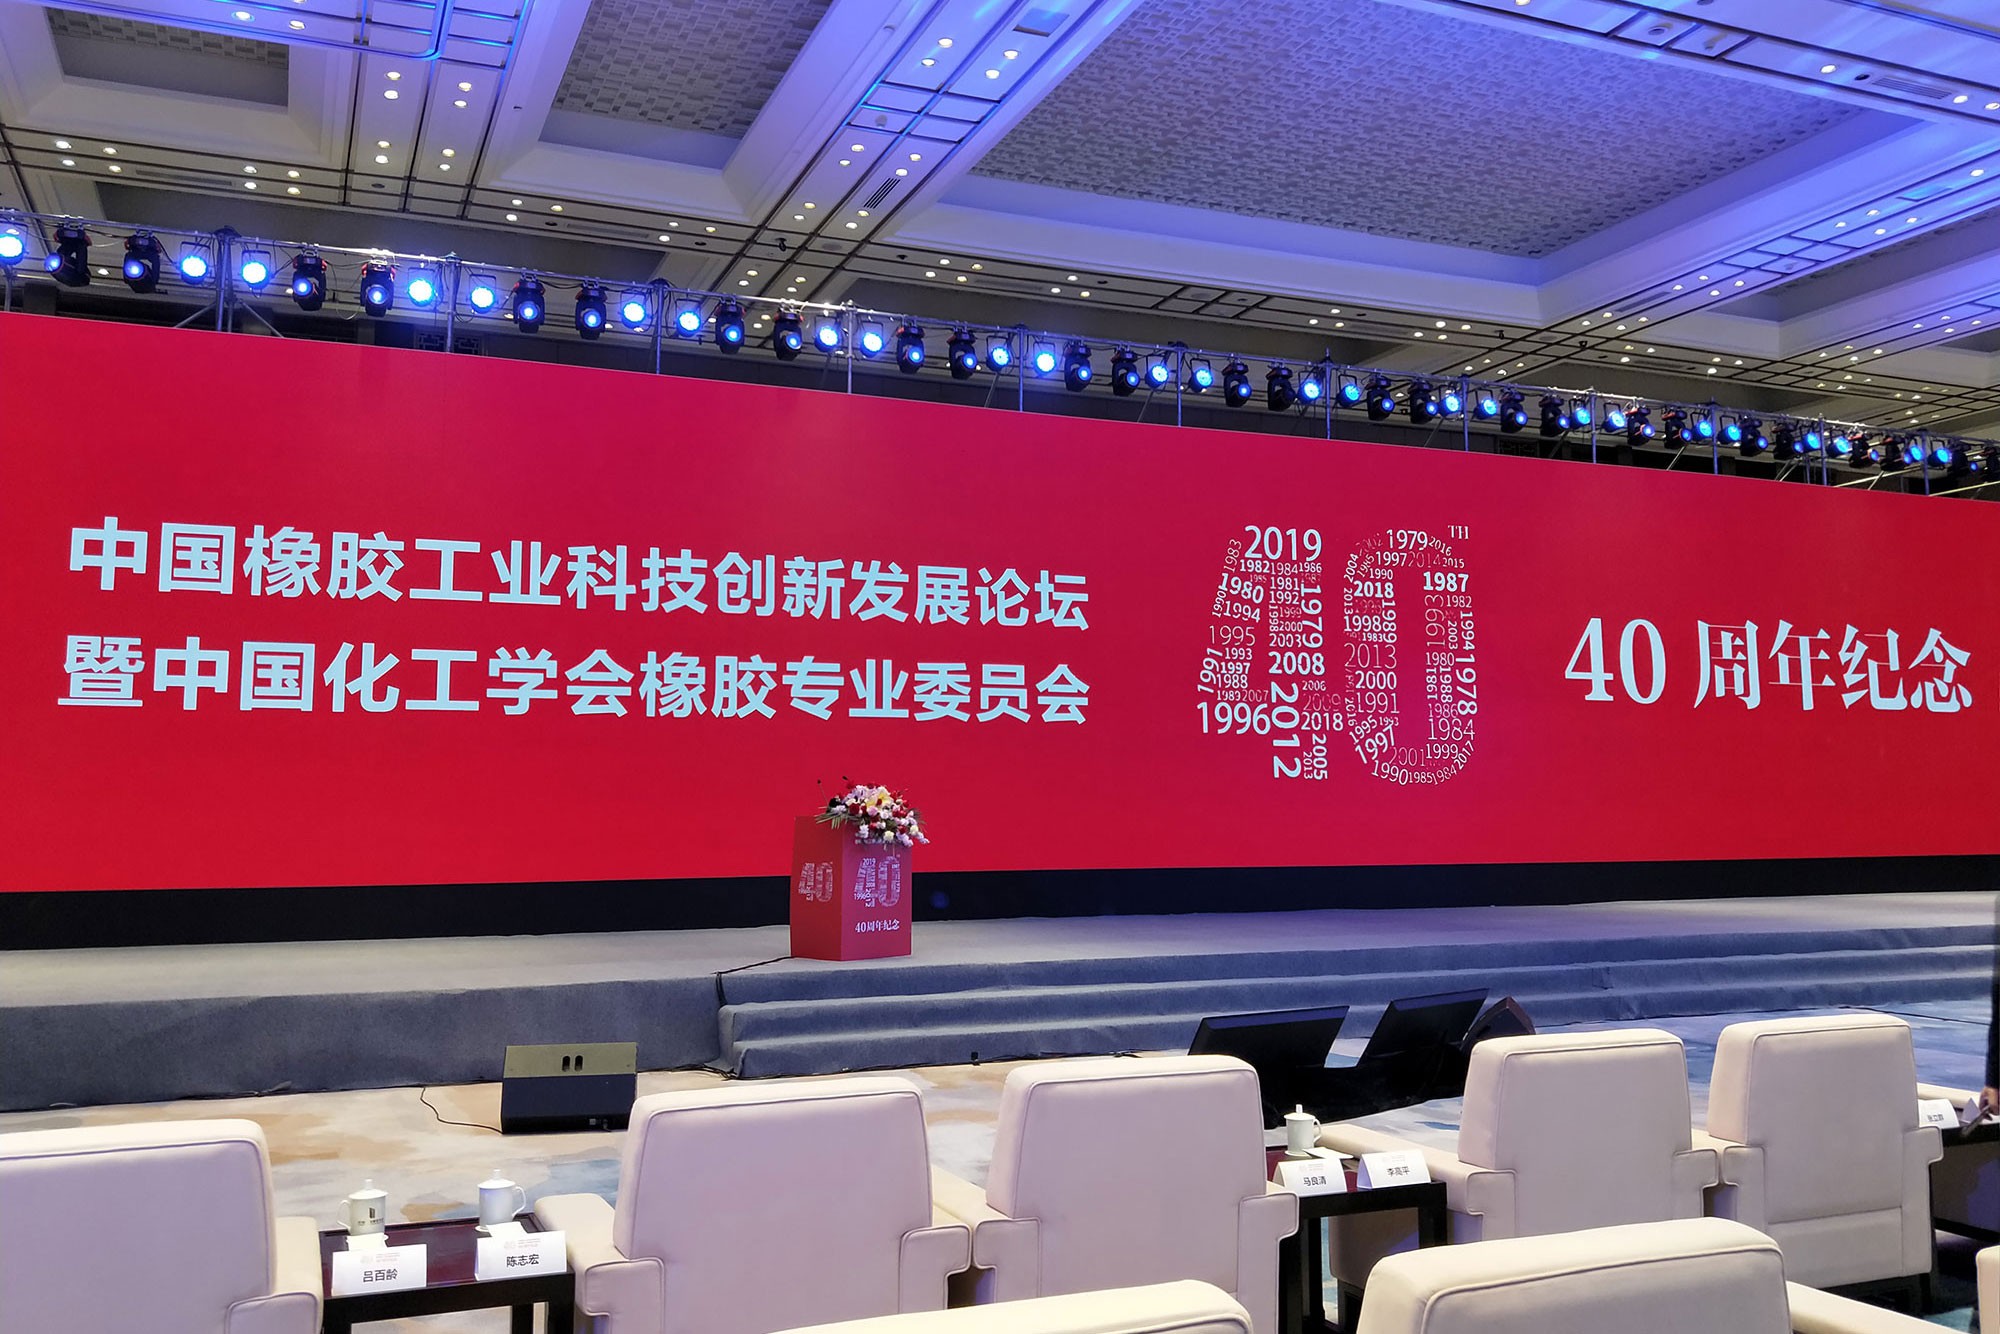 传承历史，致敬未来----中国拉斯维加斯5357cc线路检测工业改革开放40周年纪念大会纪实！